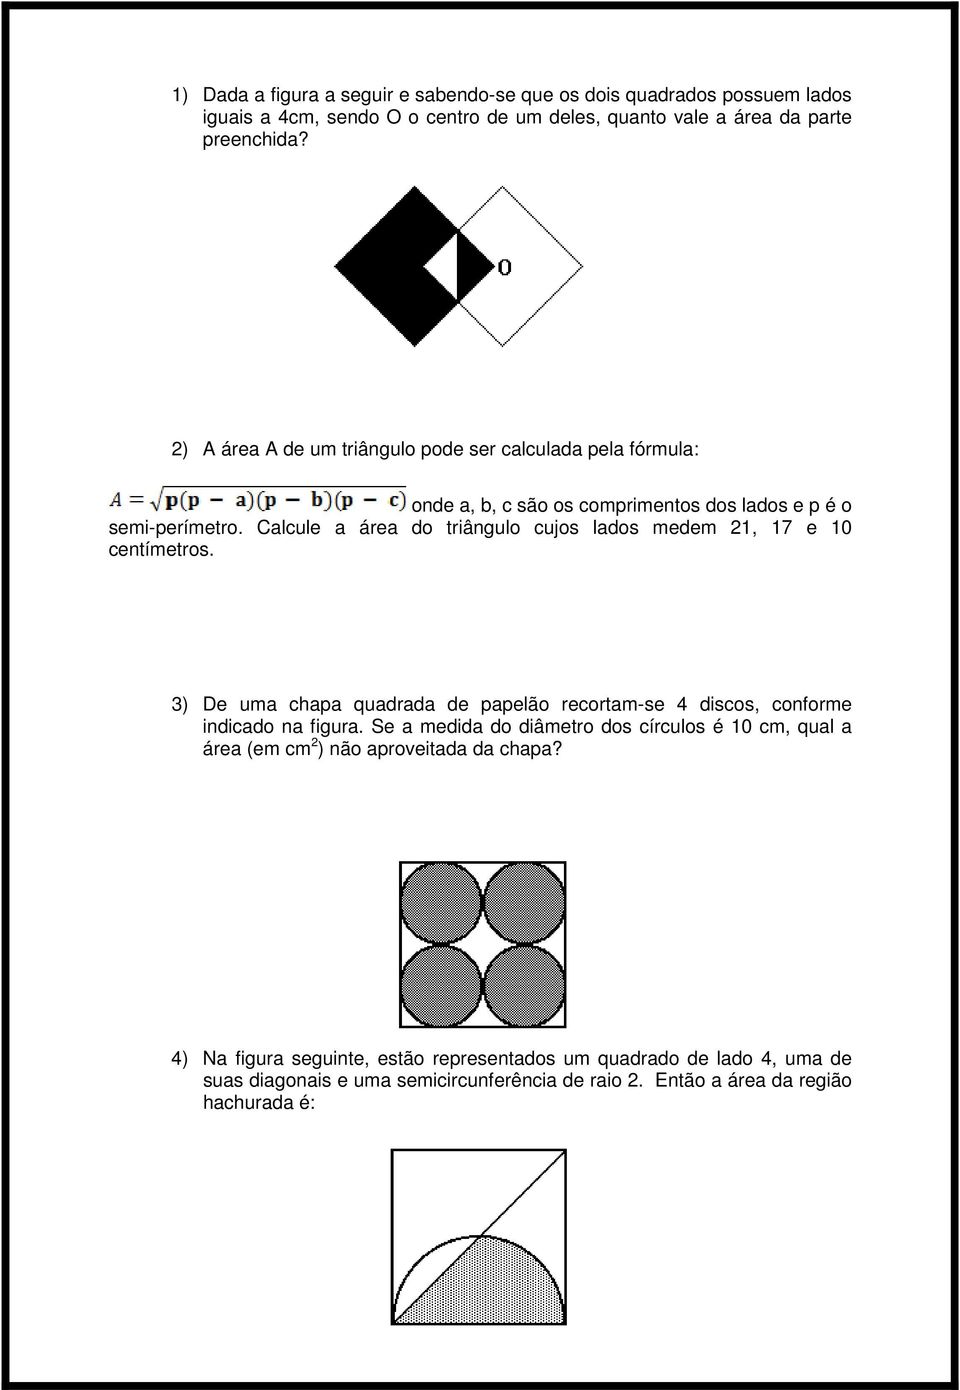 Calcule a área do triângulo cujos lados medem 21, 17 e 10 centímetros. 3) De uma chapa quadrada de papelão recortam-se 4 discos, conforme indicado na figura.